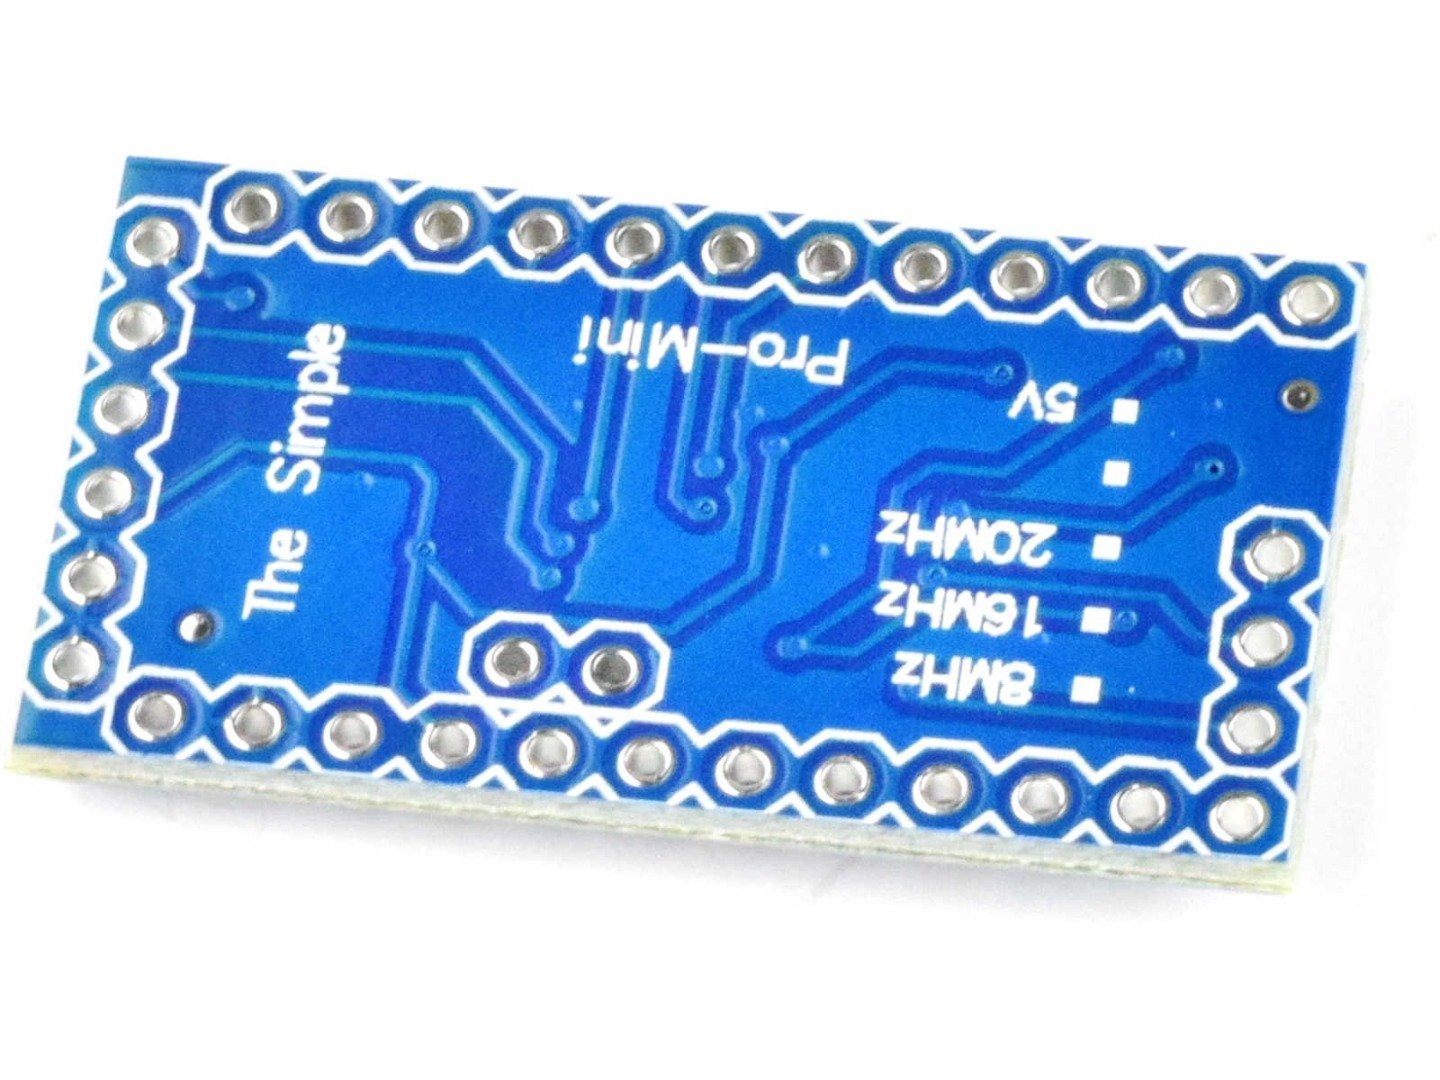 Pro Mini ATmega328P module 5V, 16MHz (100% compatible with Arduino) 10